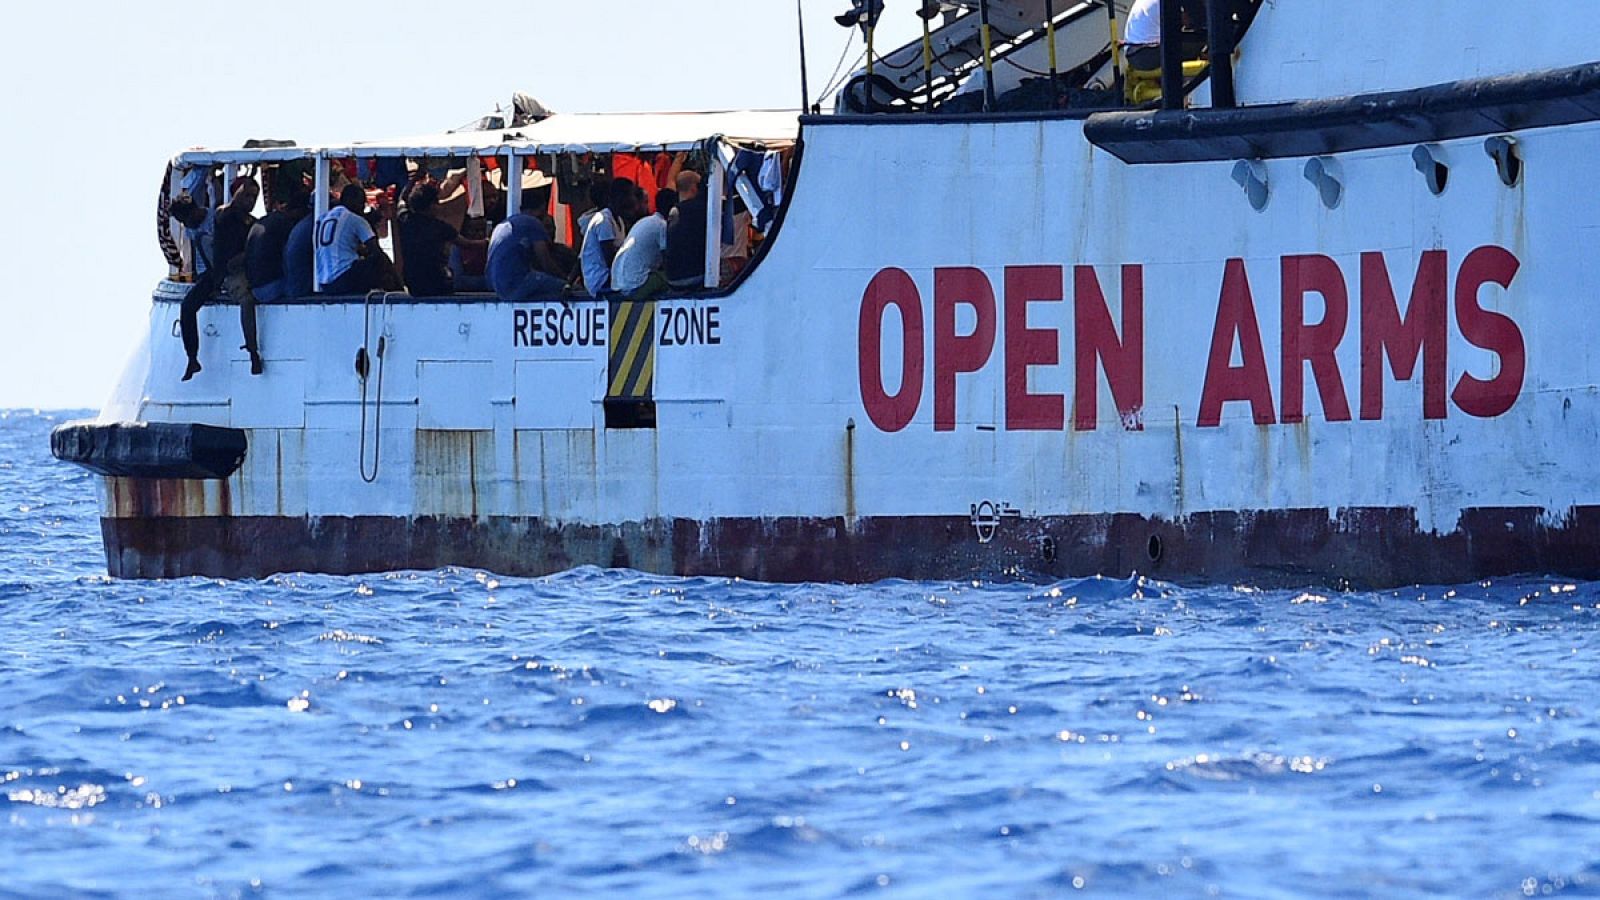 La desesperación cunde en el Open Arms al permanecer bloqueado frente a Lampedusa